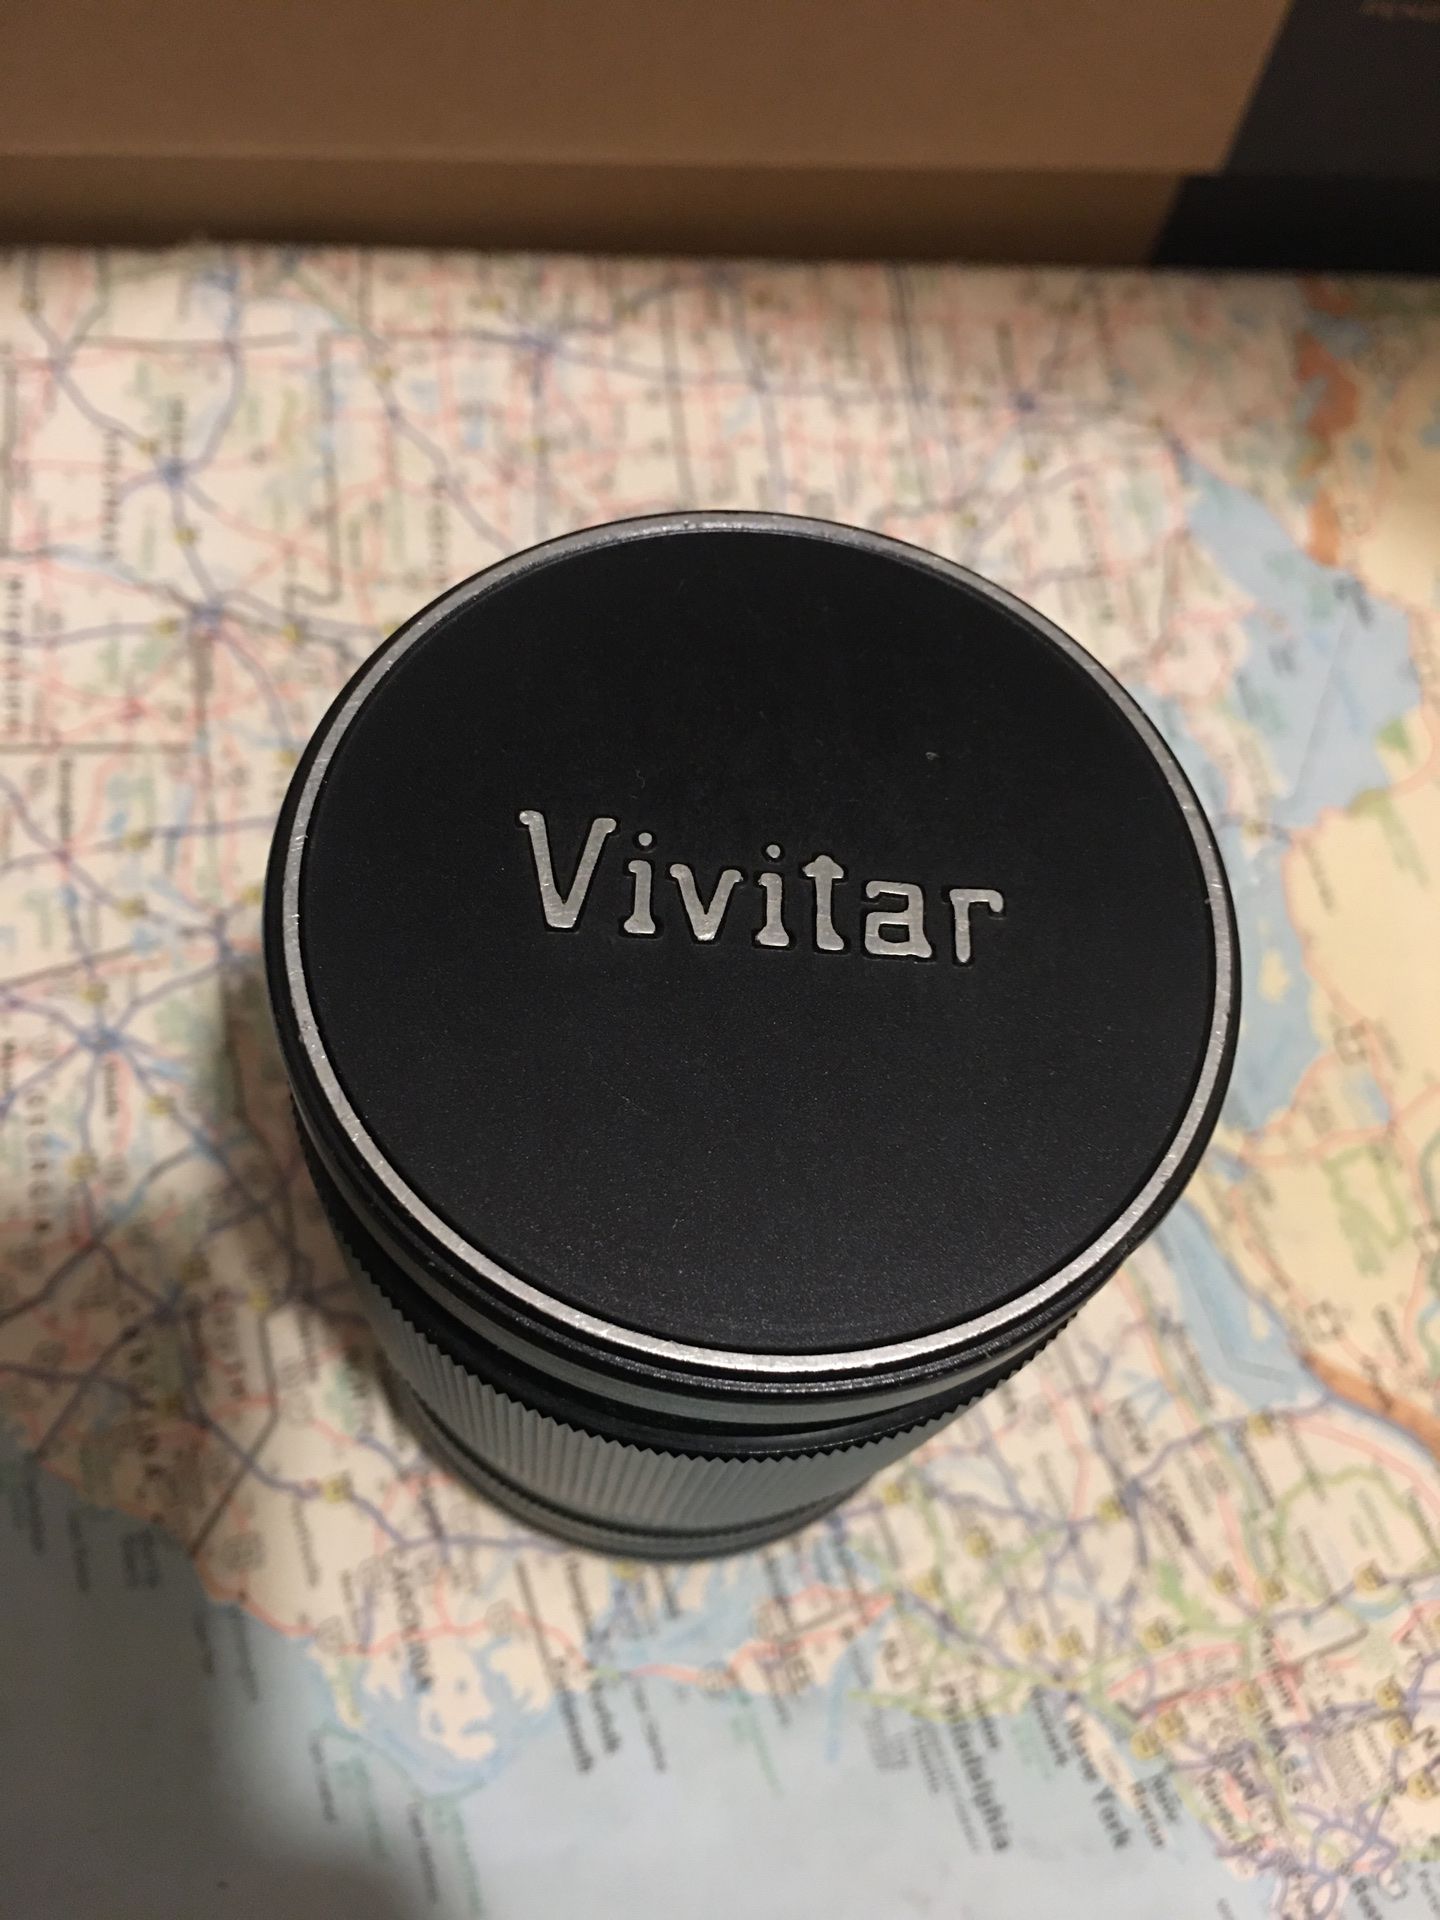 Vivitar Lens